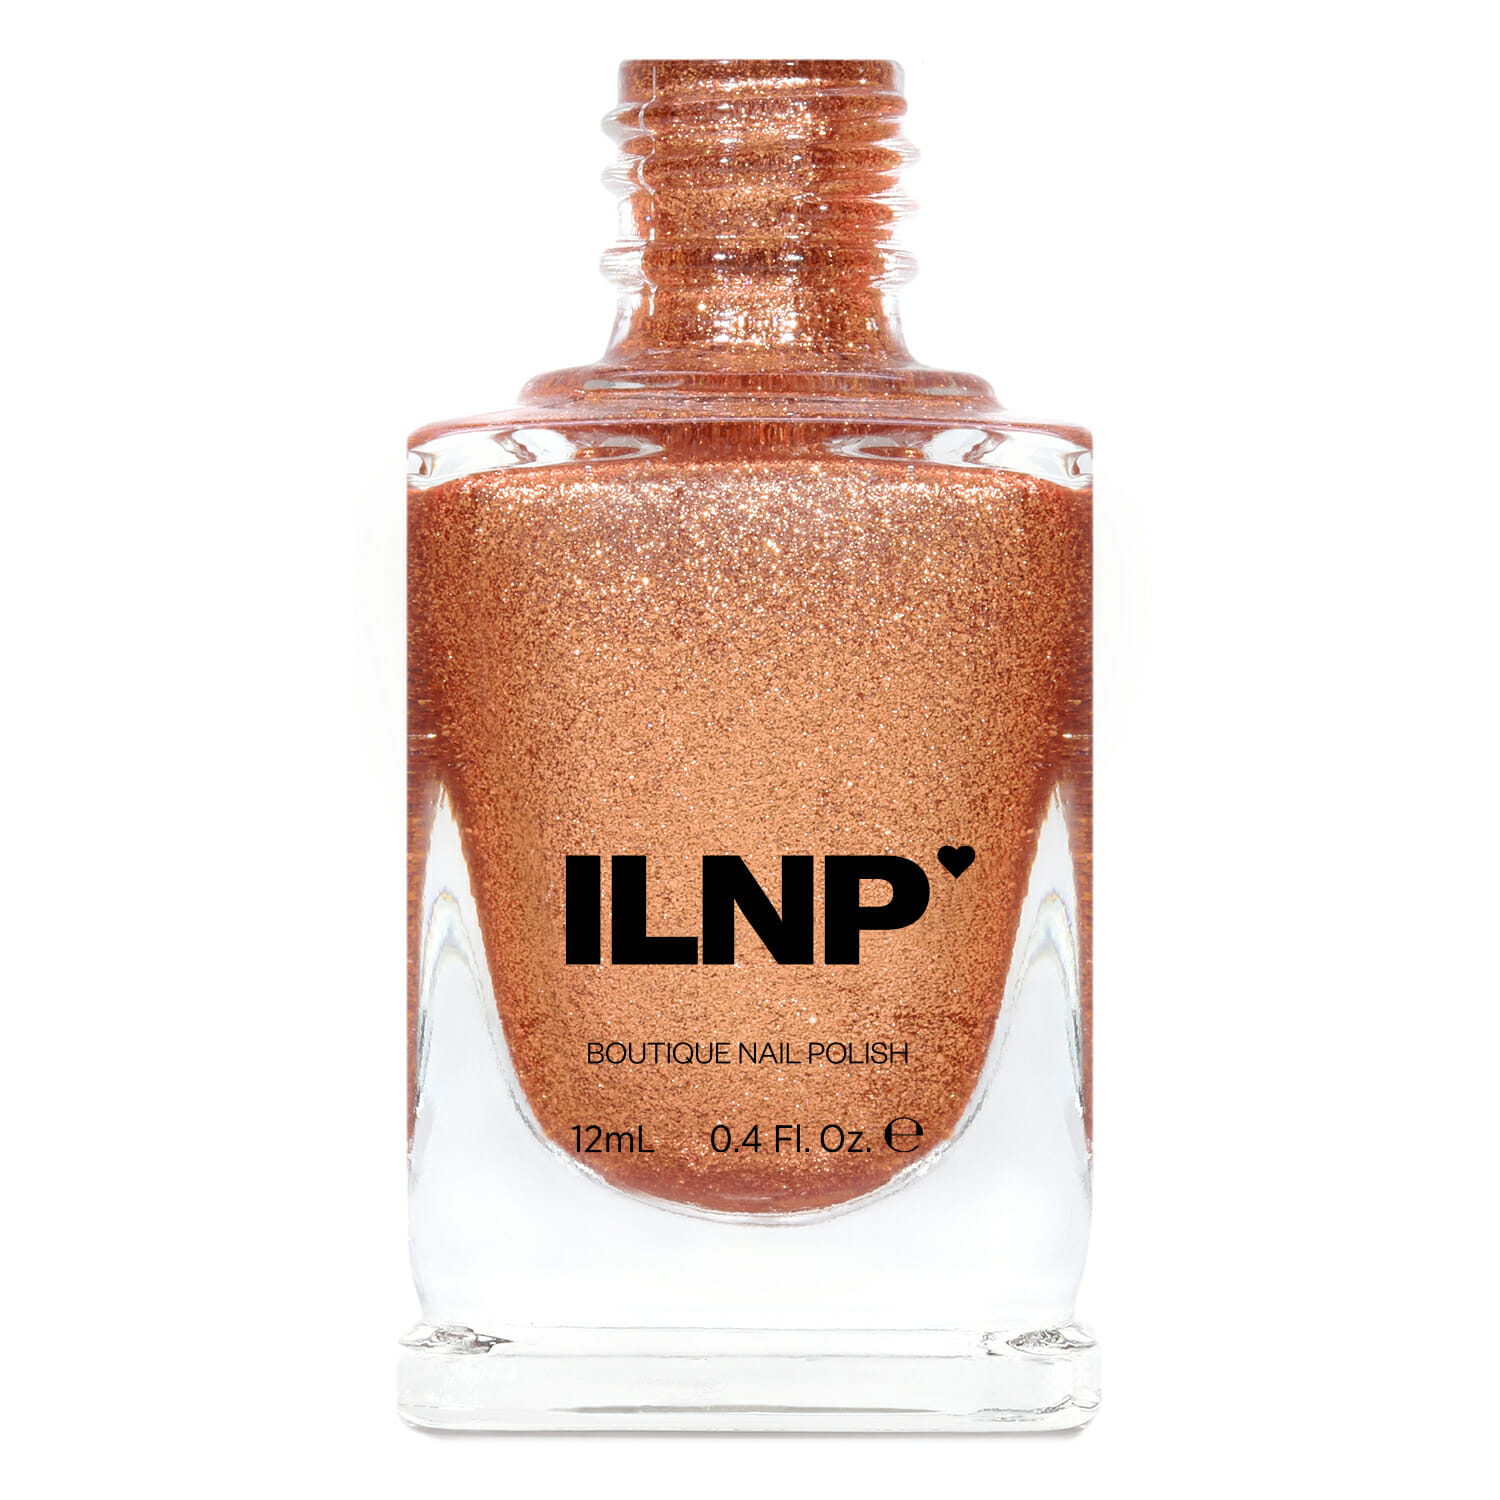 ILNP Boutique Nail Lacquer – Copper Orange